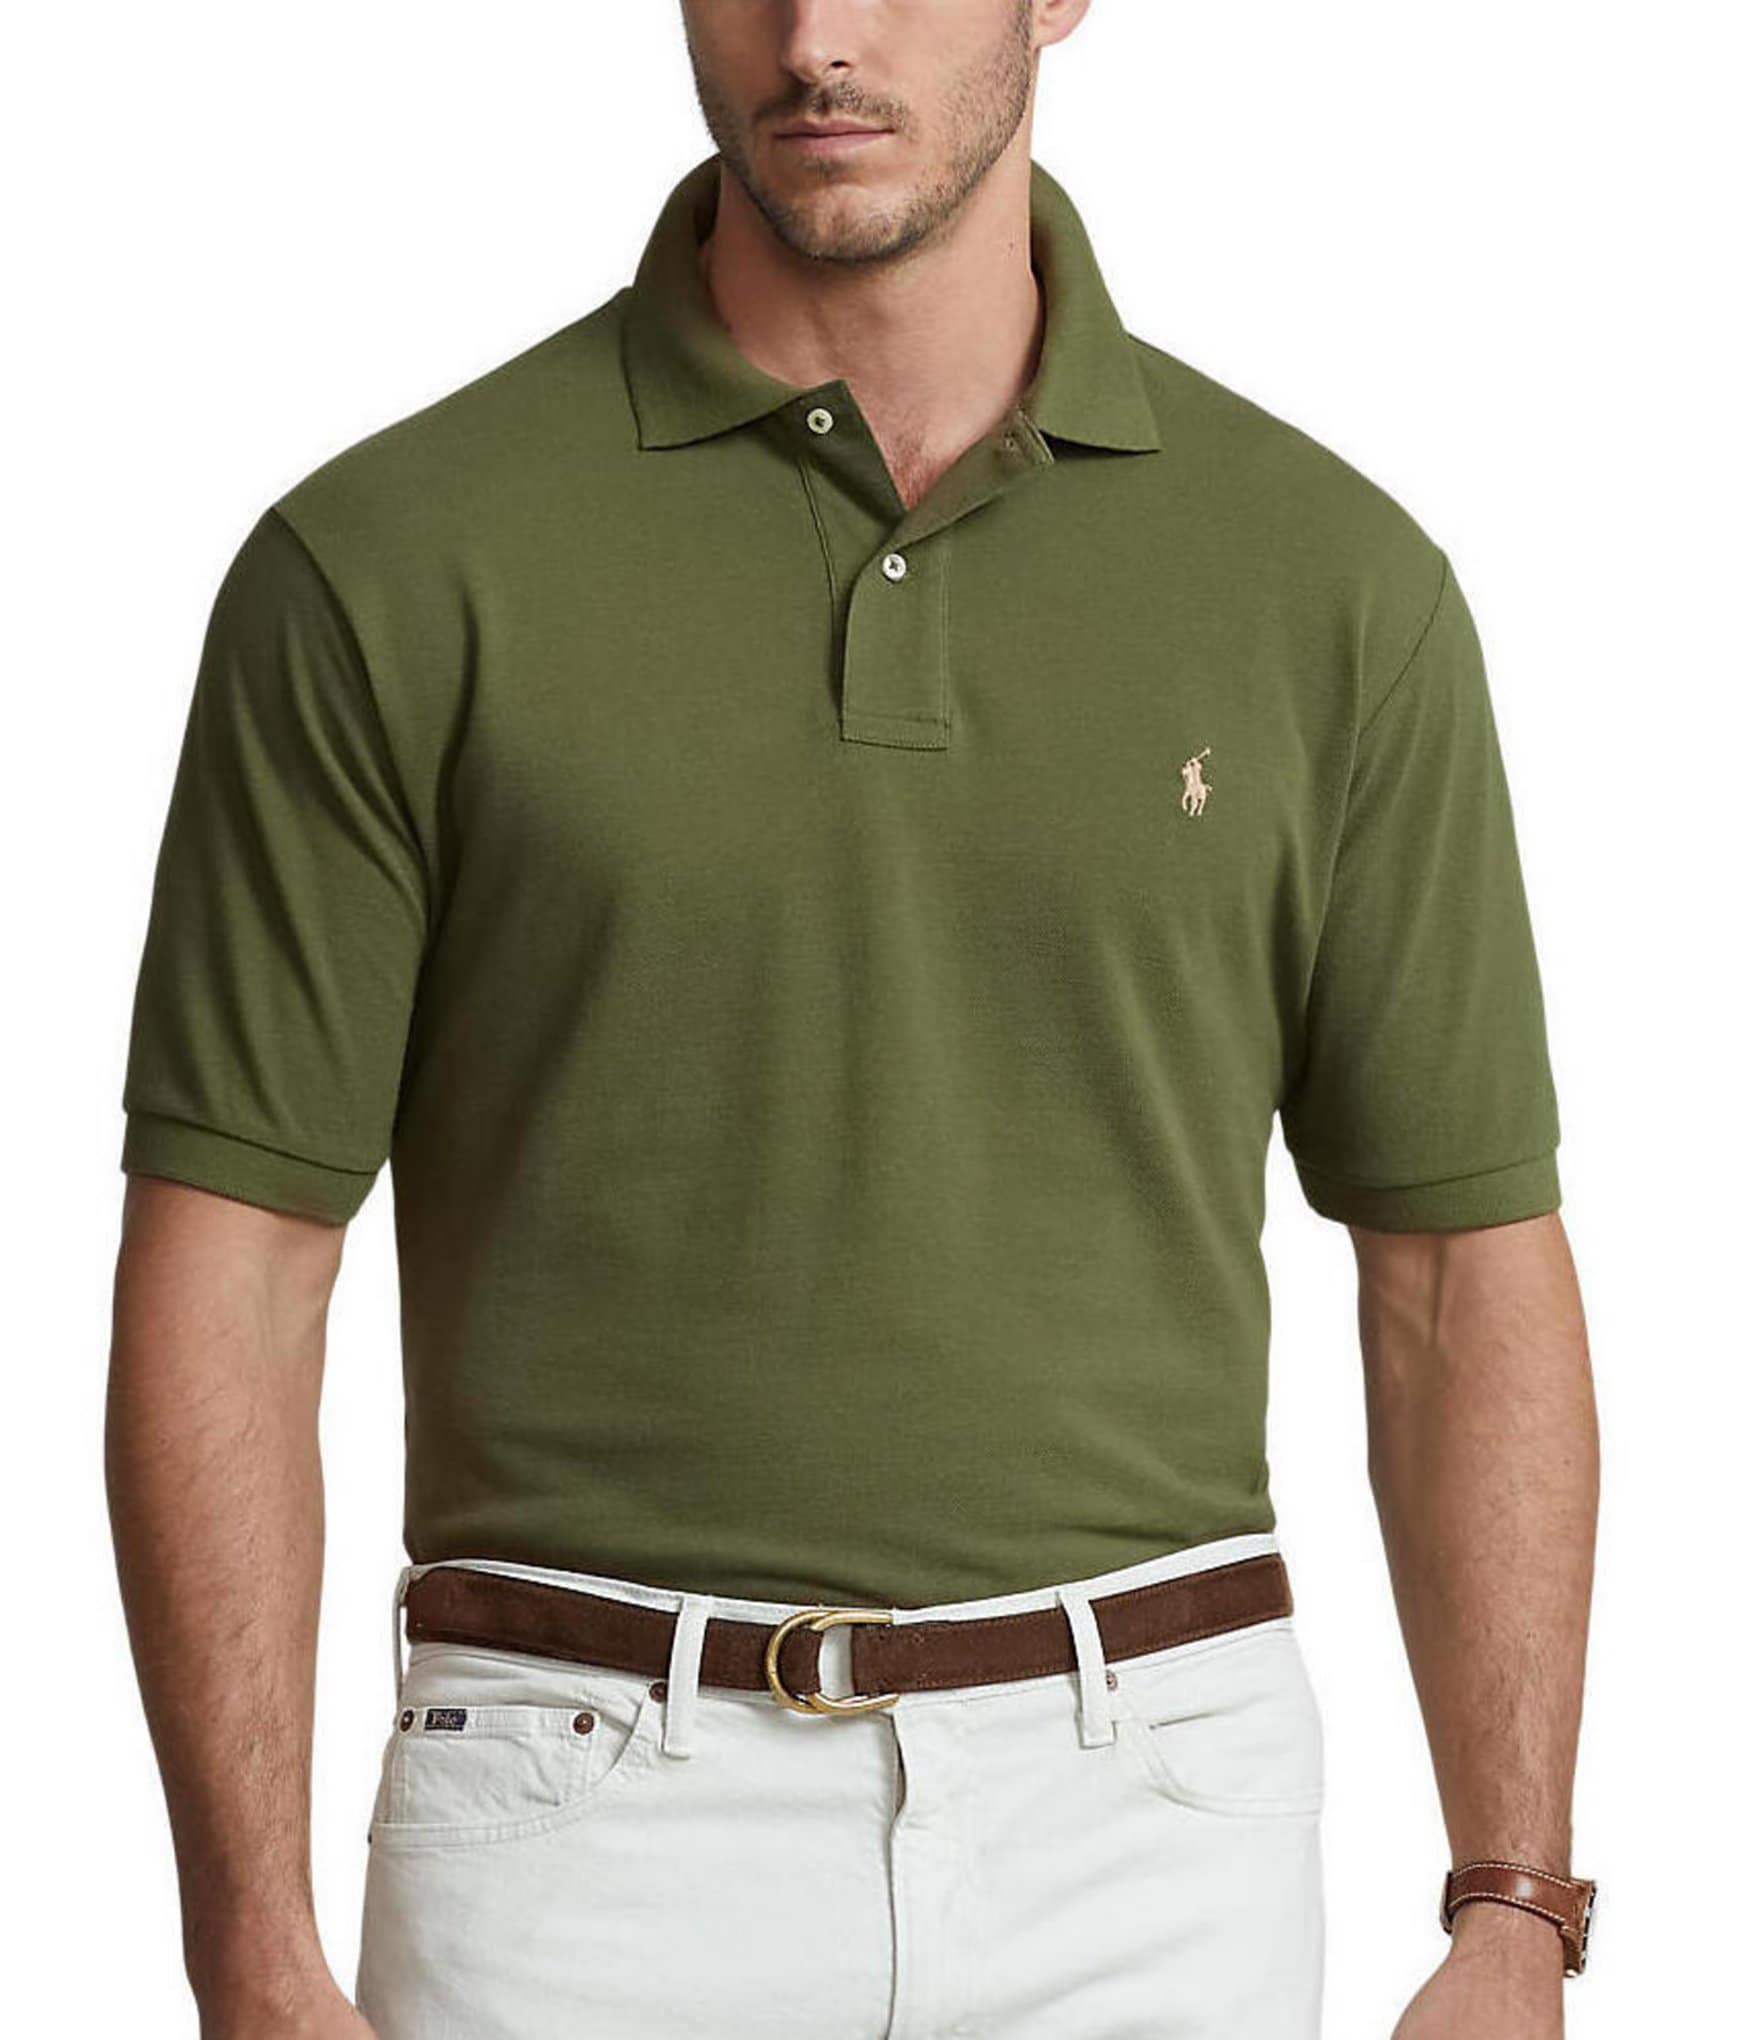 Ralph Lauren Polo Shirt Mens Size 3XB Green Golf Casual Short Sleeve Adult